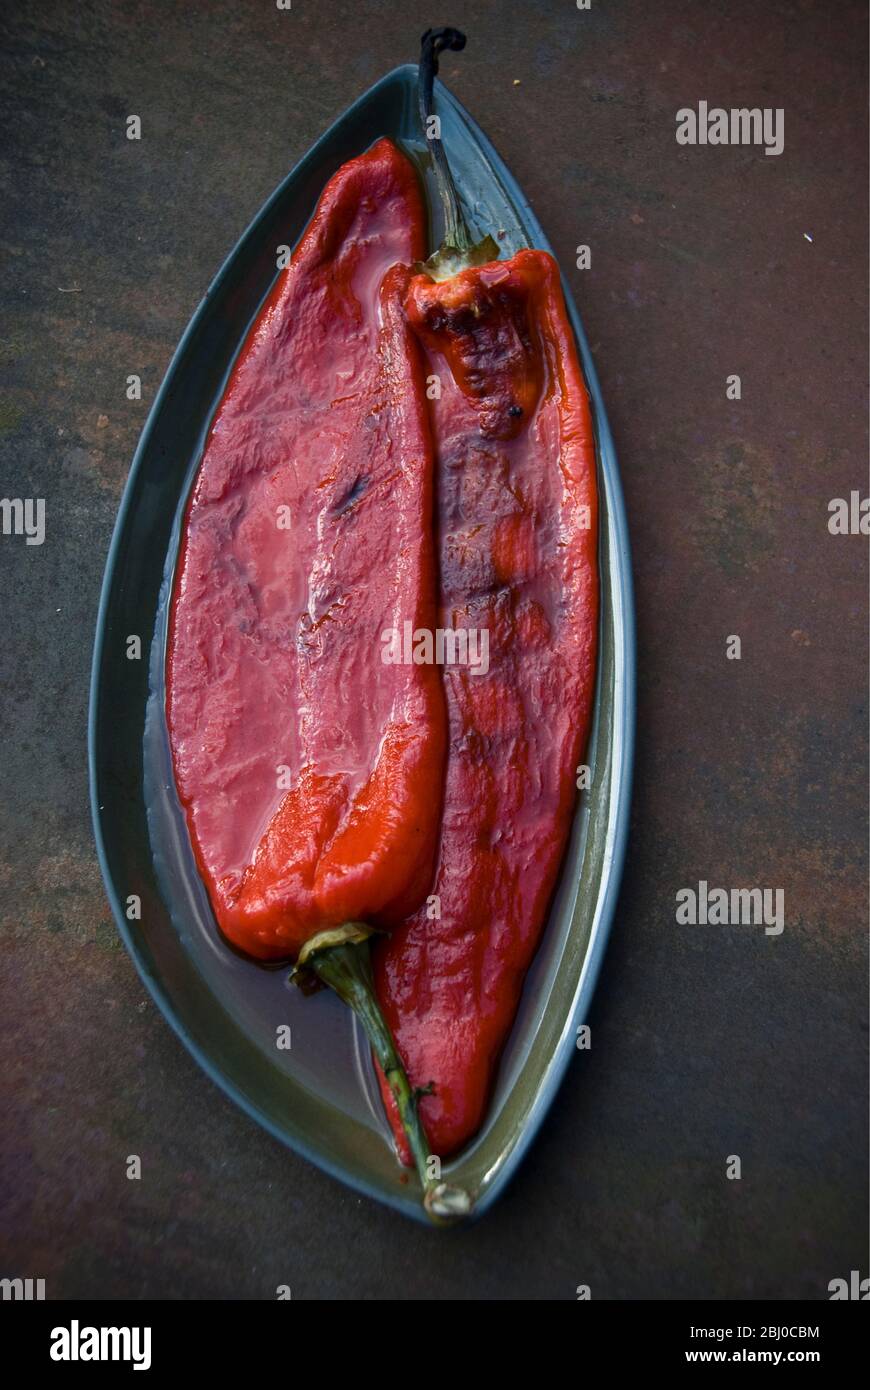 Gegrillte rote Paprika mit Blasen Haut entfernt - Stockfoto